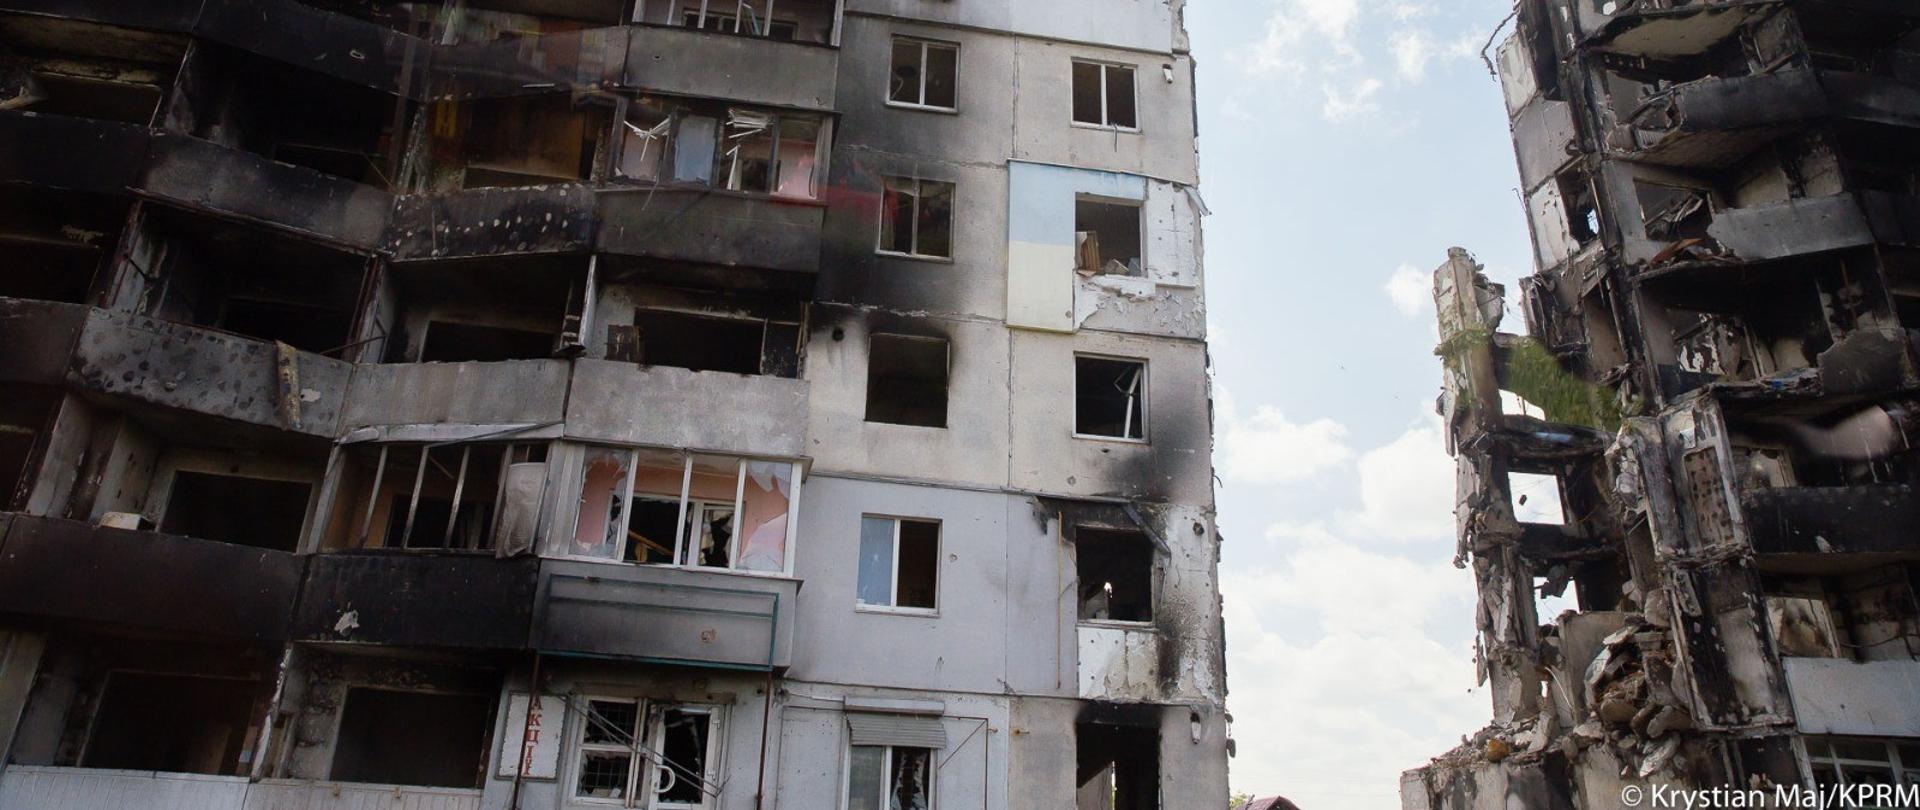 Dwa wysokie budynki mieszkalne na Ukrainie zniszczone od ostrzału